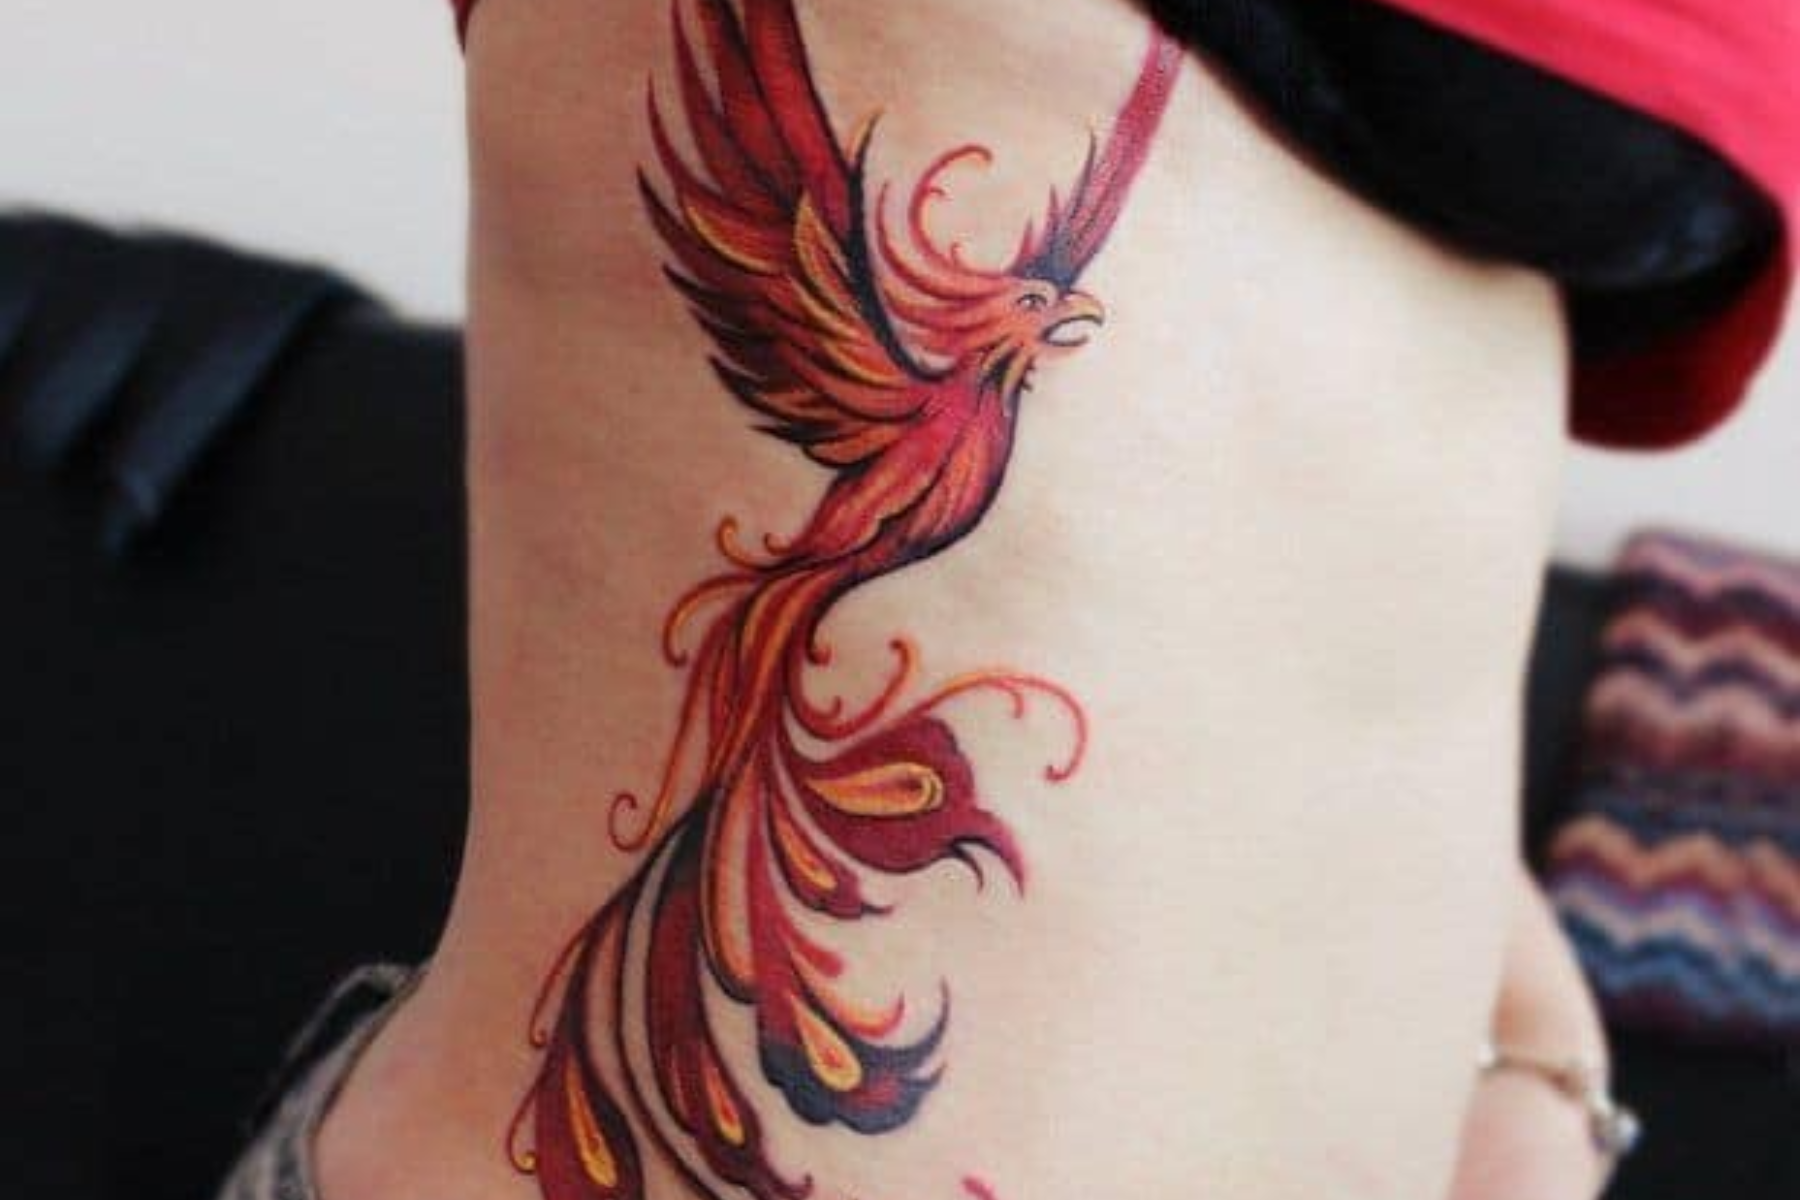 Sketchy rising phoenix - Seven Skulls Tattoos, Germany, Köngen : r/tattoos